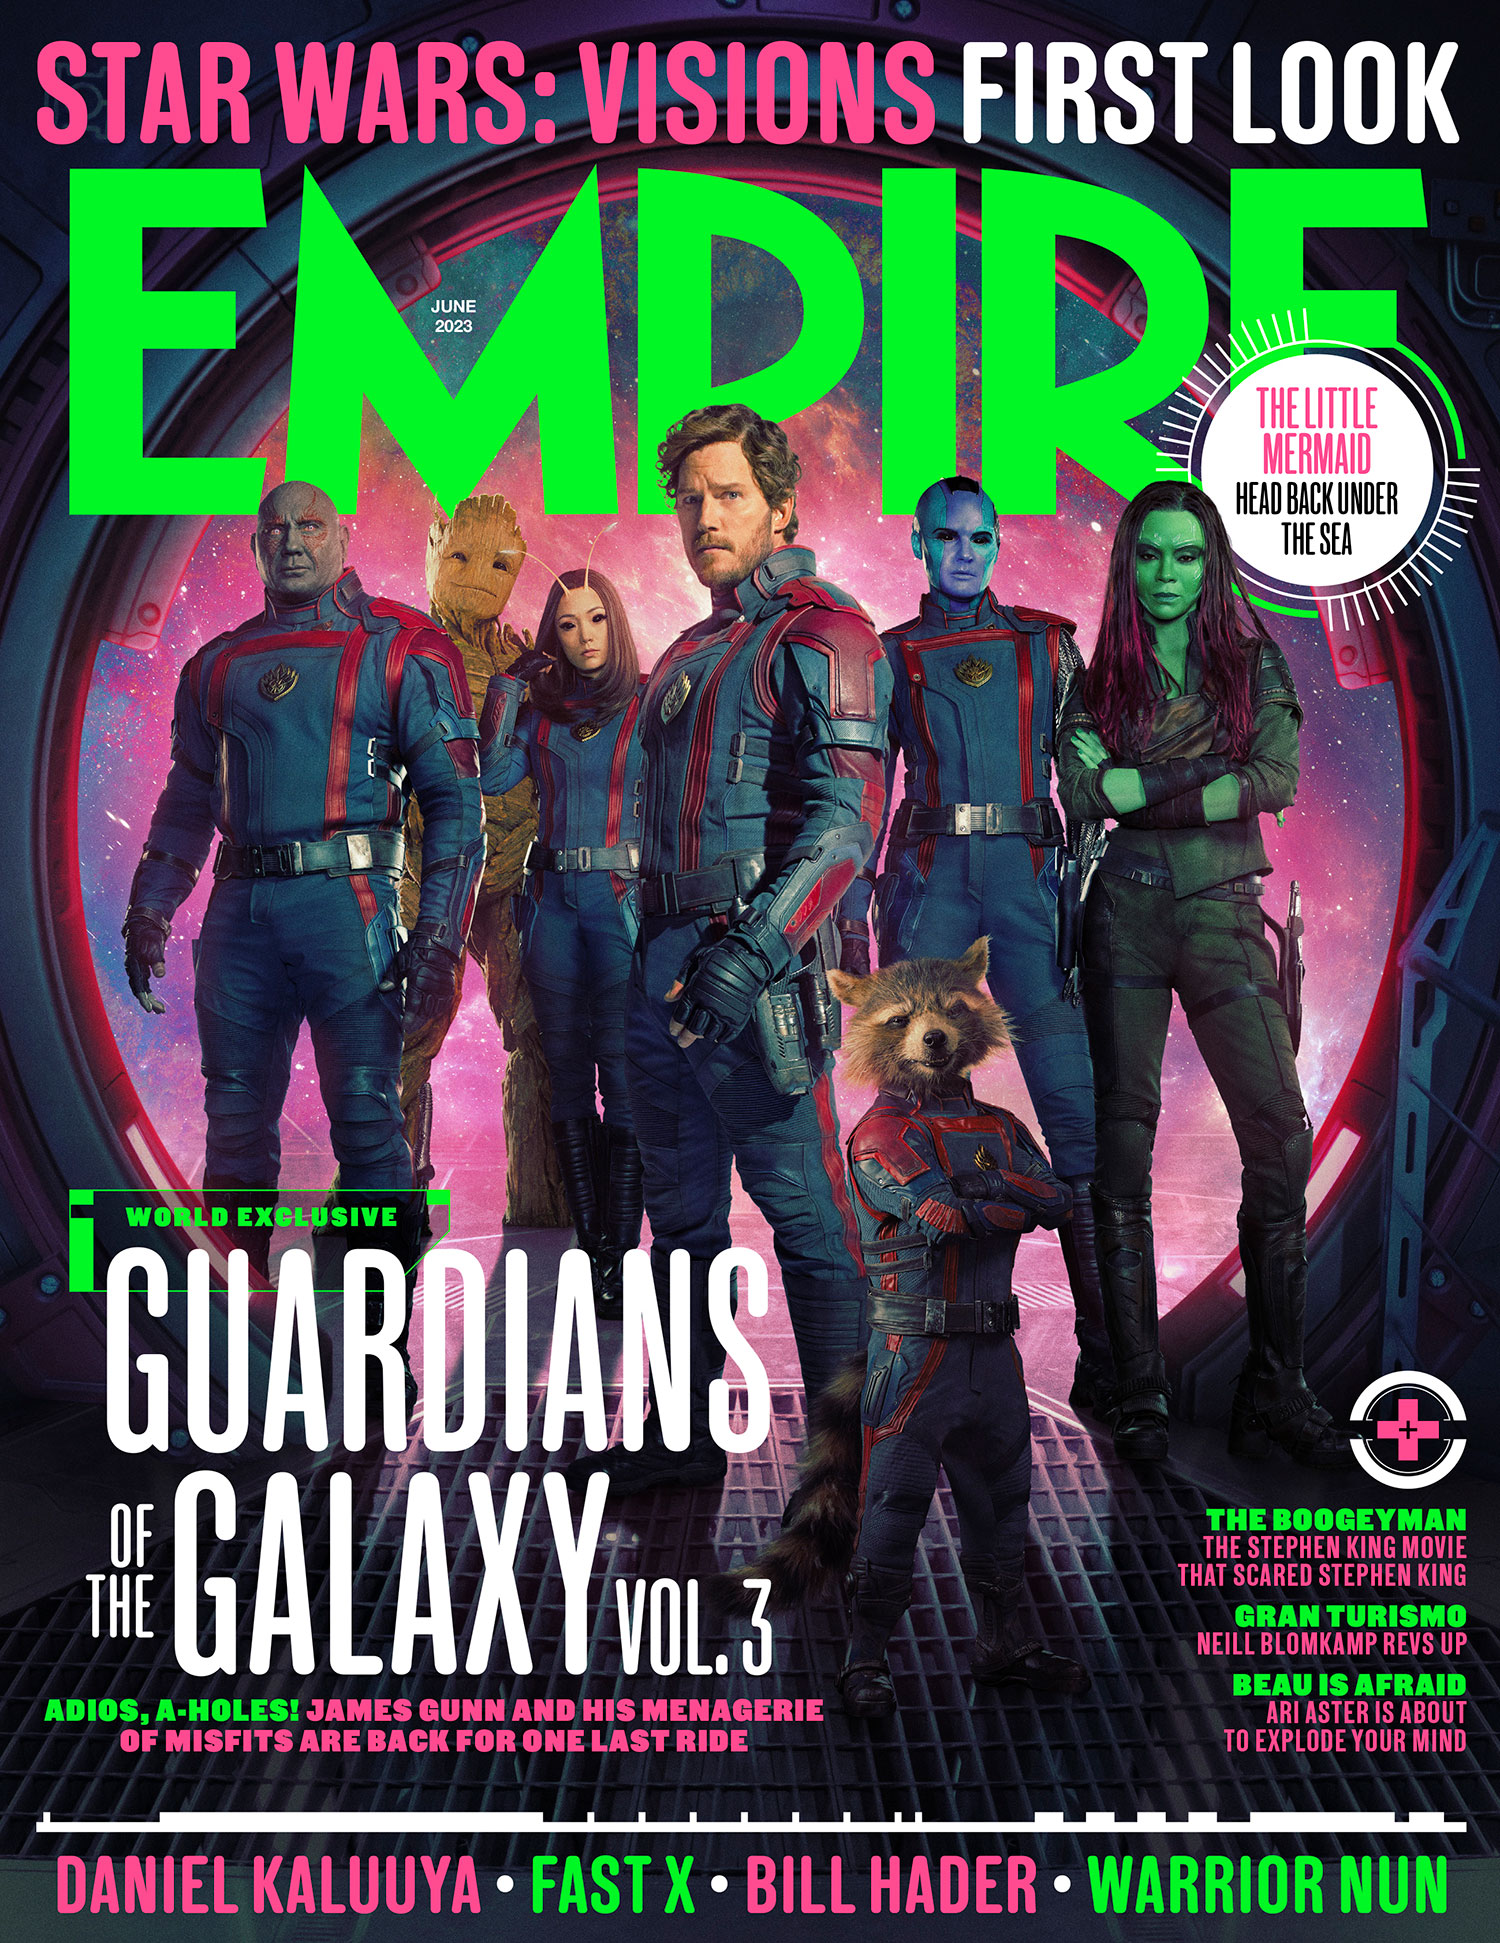 Portada de Empire dedicada a Guardianes de la Galaxia Volumen 3